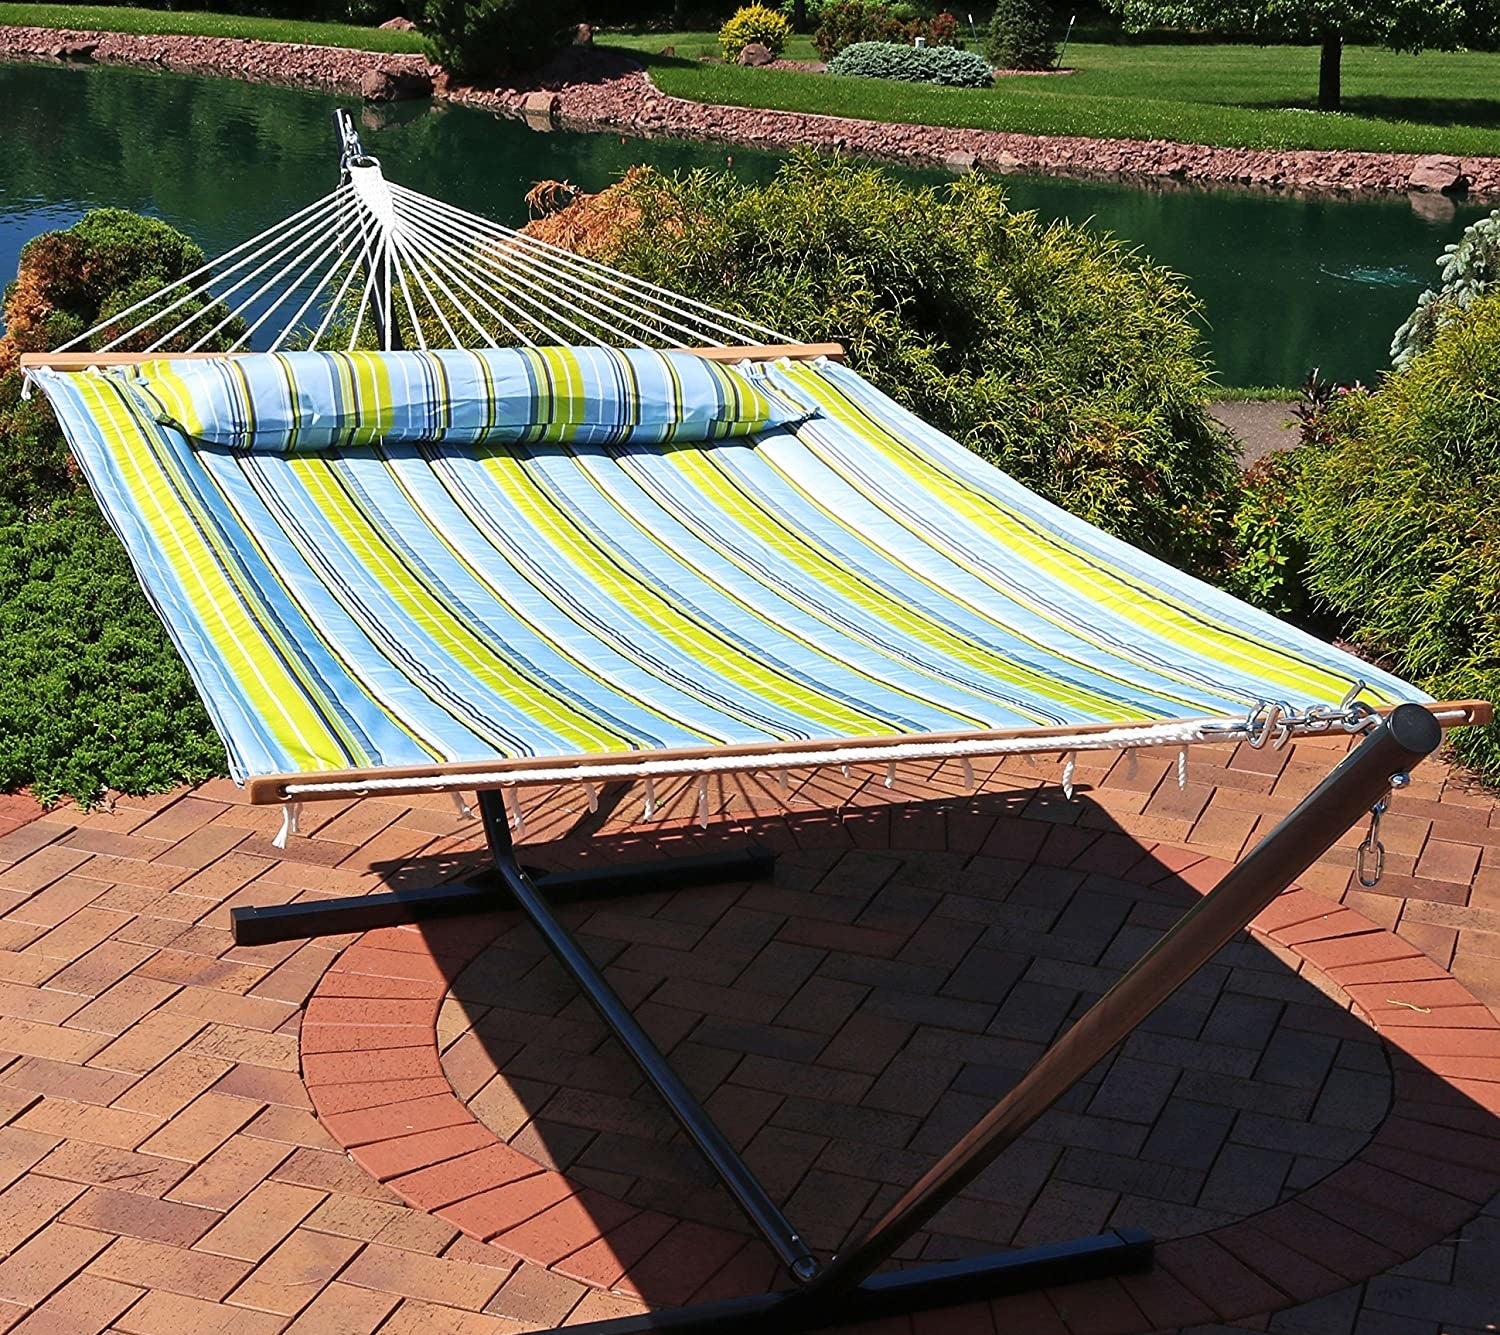 A hammock hangs on a patio